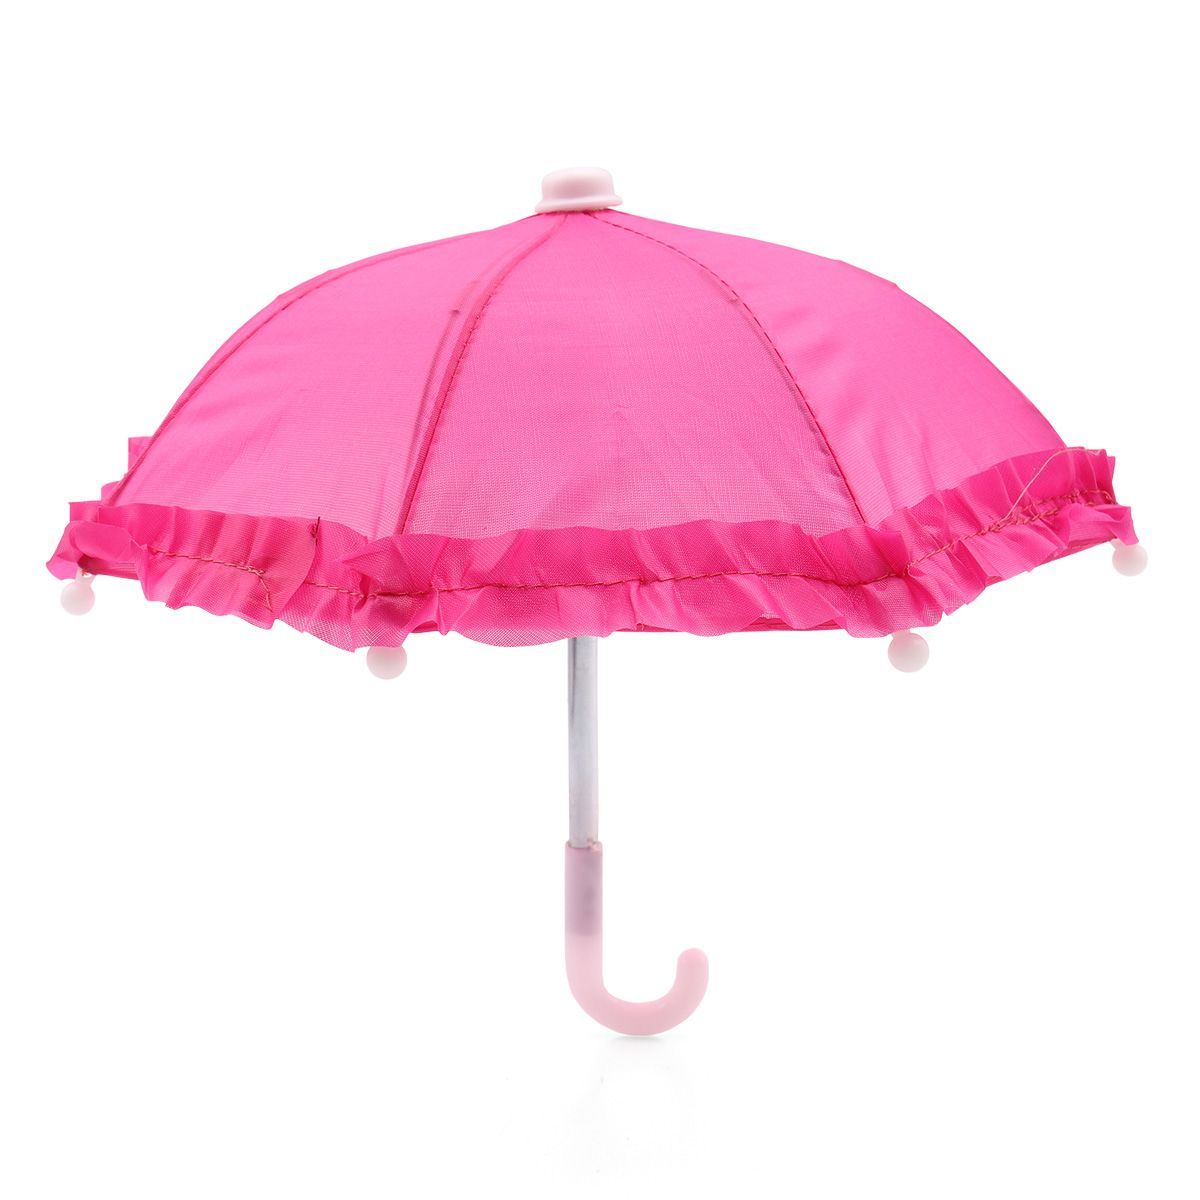 Зонтик для куклы. Зонтик для кукол. Молочный зонтик для куклы. Кукла Astra&Craft. Теорема зонтика.